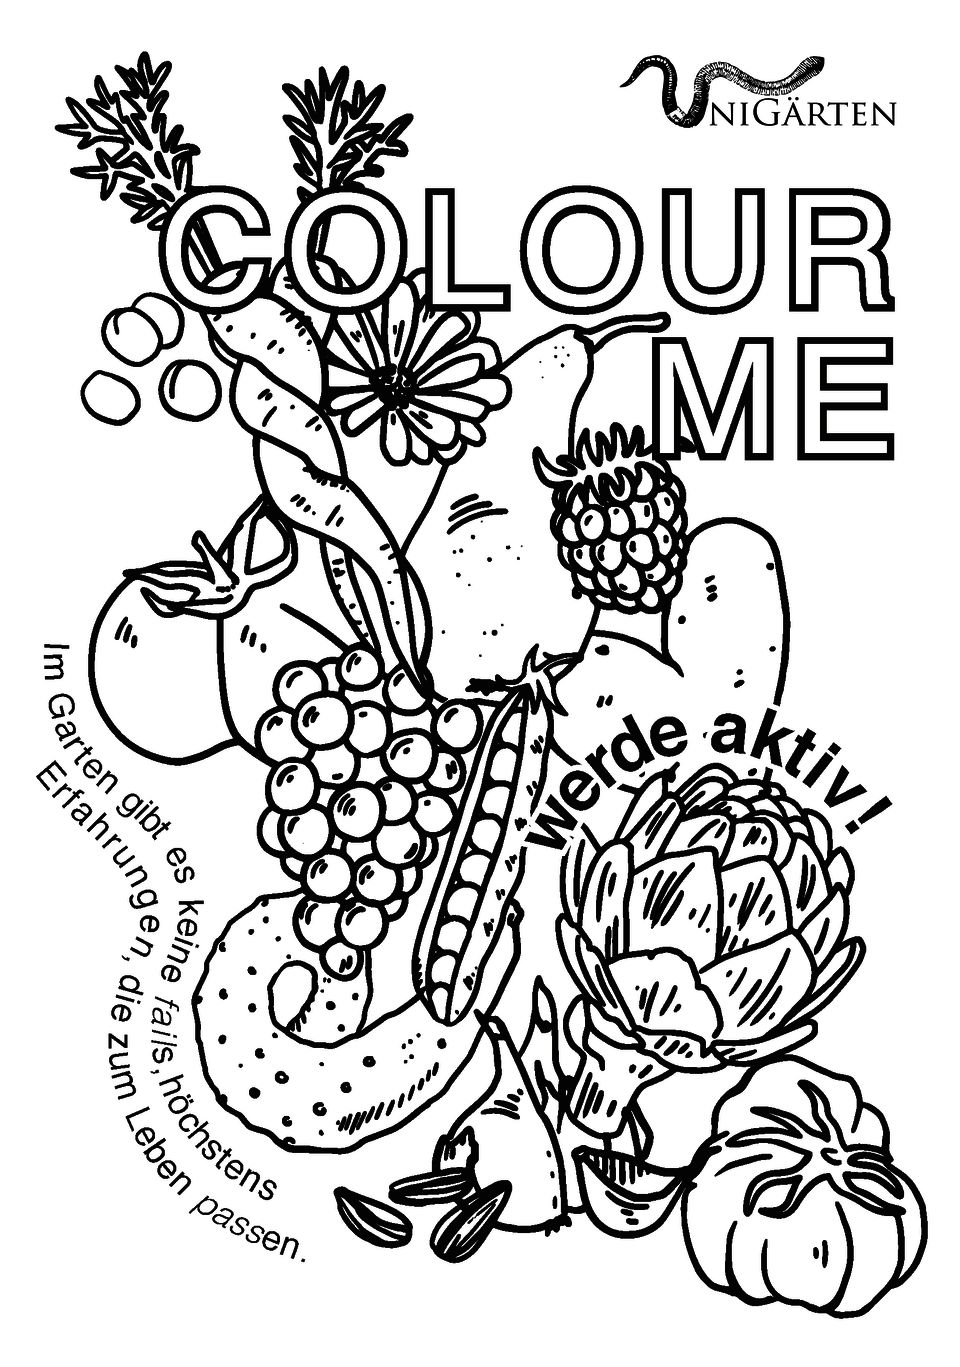 Verschiedenes Gemüse in schwarz und weiss mit dem Schriftzug "Colour Me", der dazu auffordert, das Gemüse auszumalen.